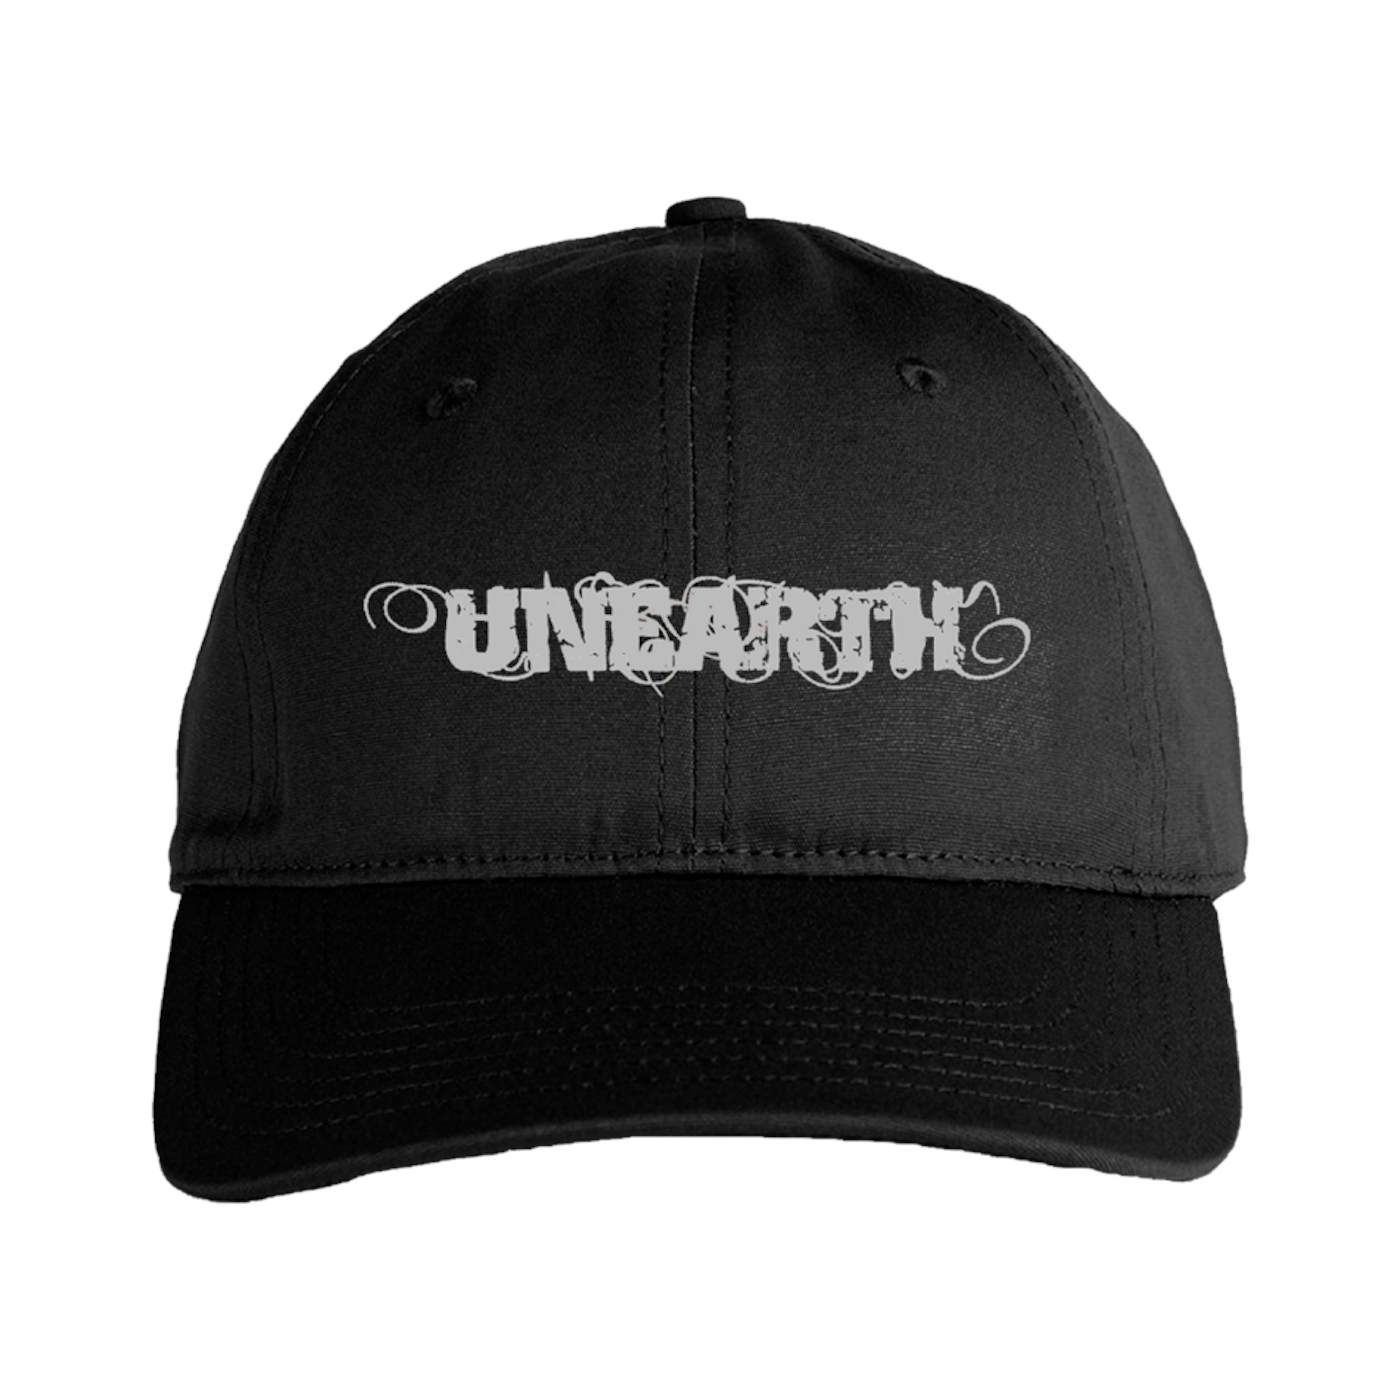 Unearth "Logo" Hat